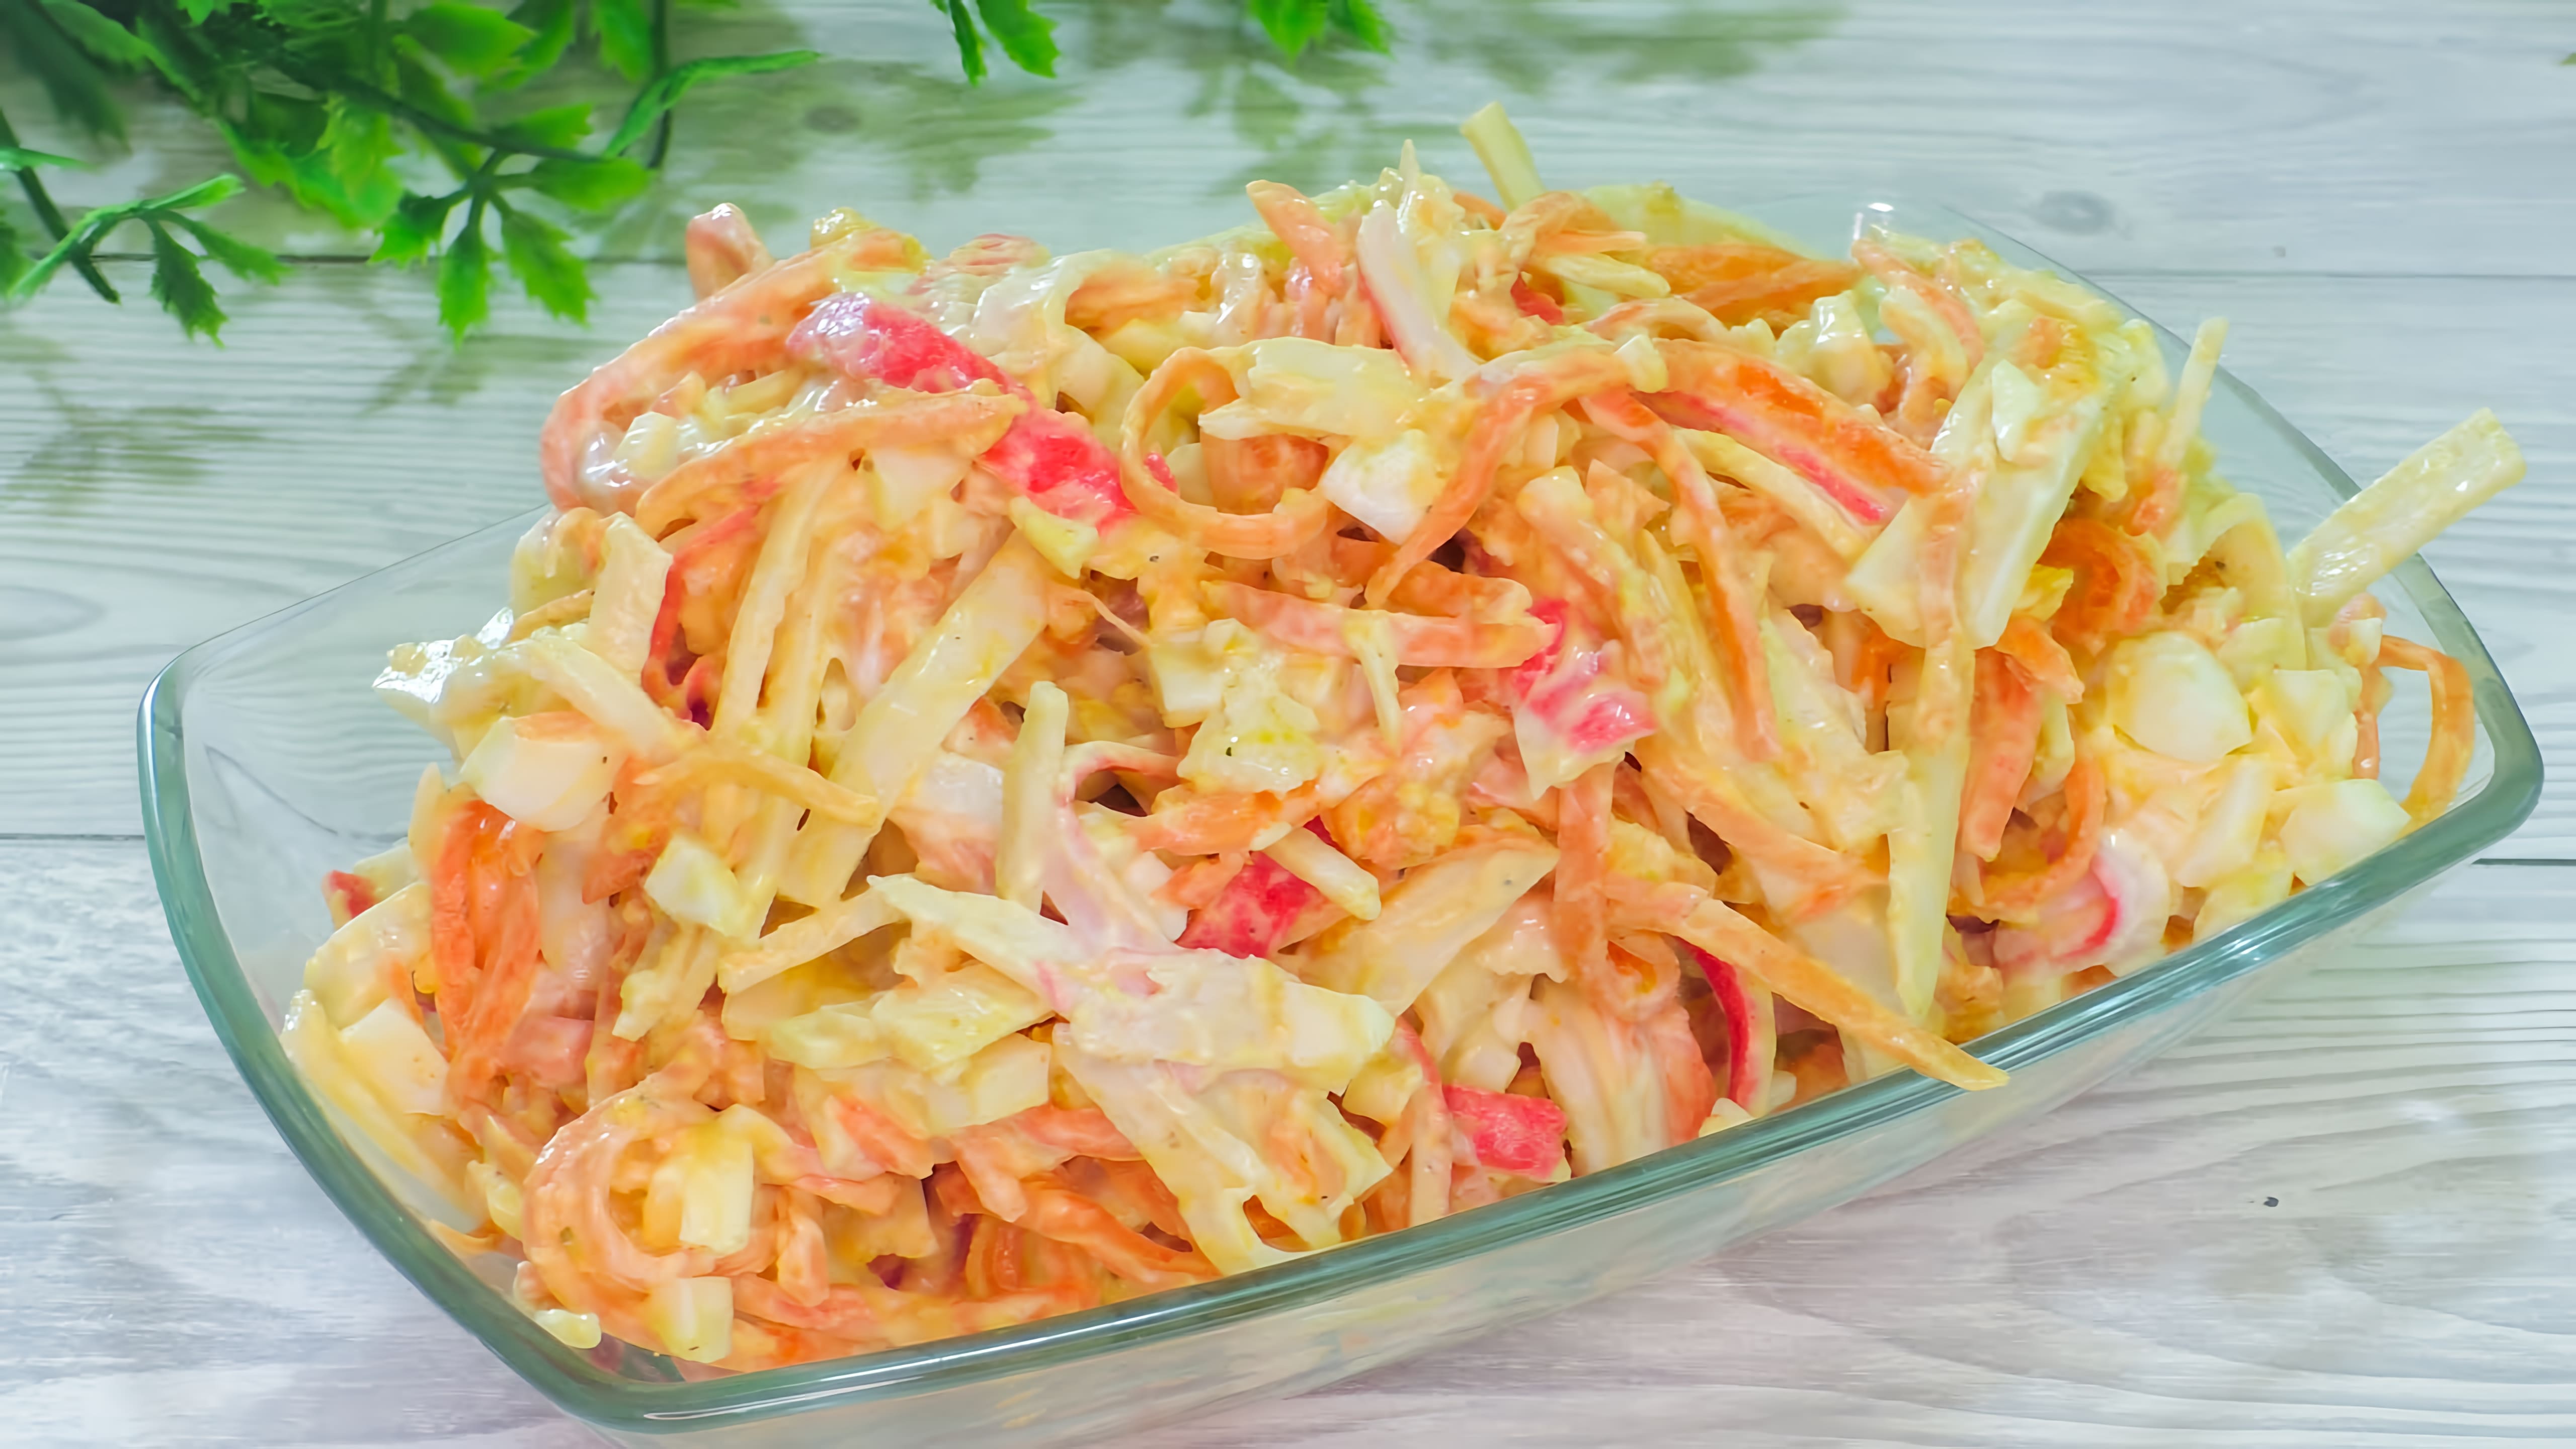 Видео: Простой и вкусный салат из трех ингредиентов с легкой заправкой — идеальное блюдо для всей семьи!